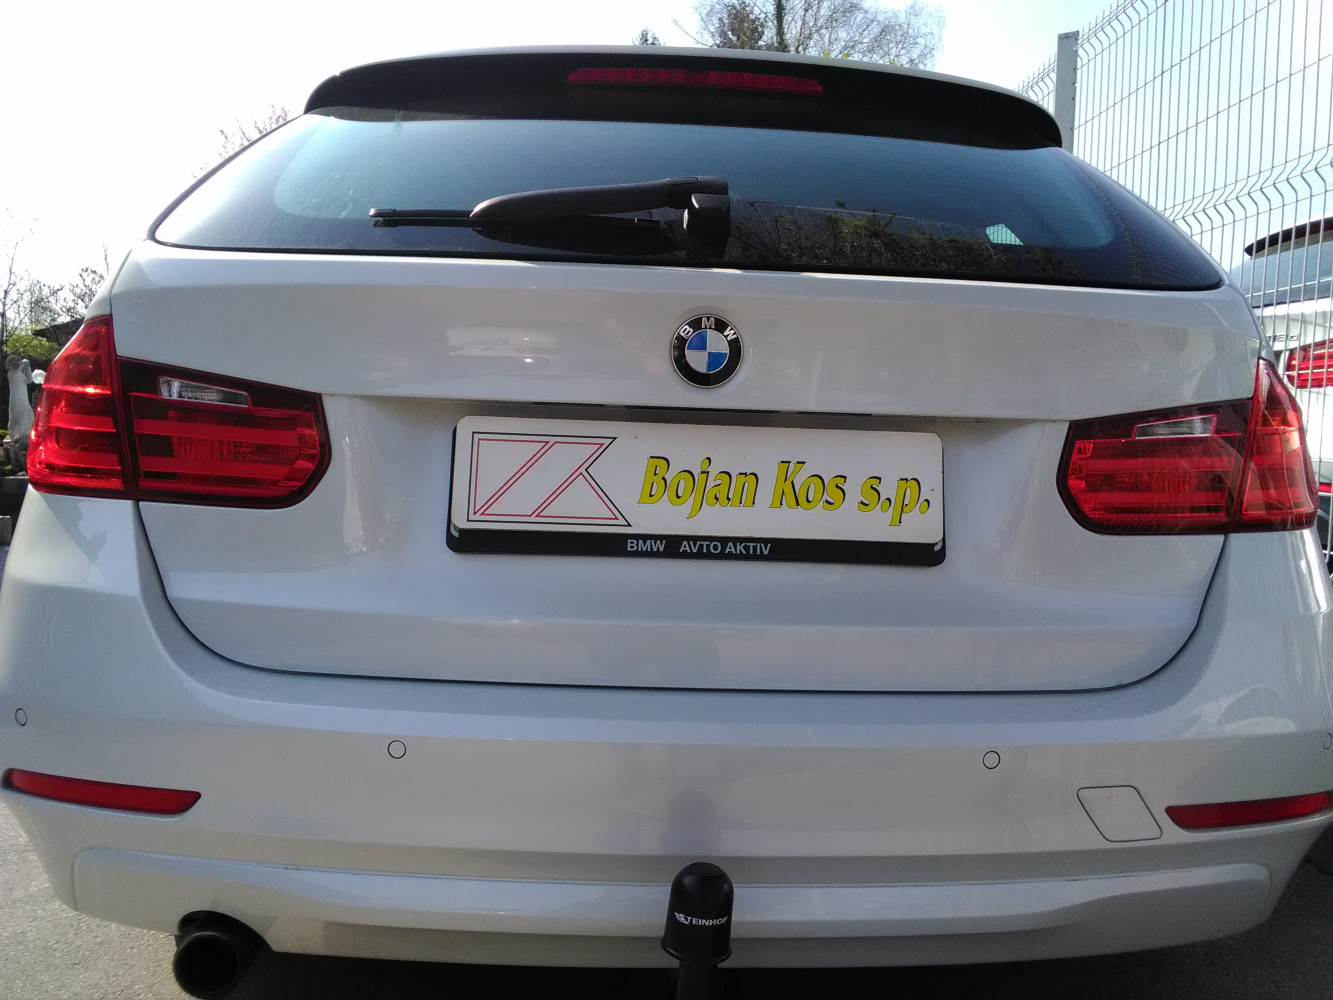 
BMW-3 kar. l.12-,skrita-Steinhof
